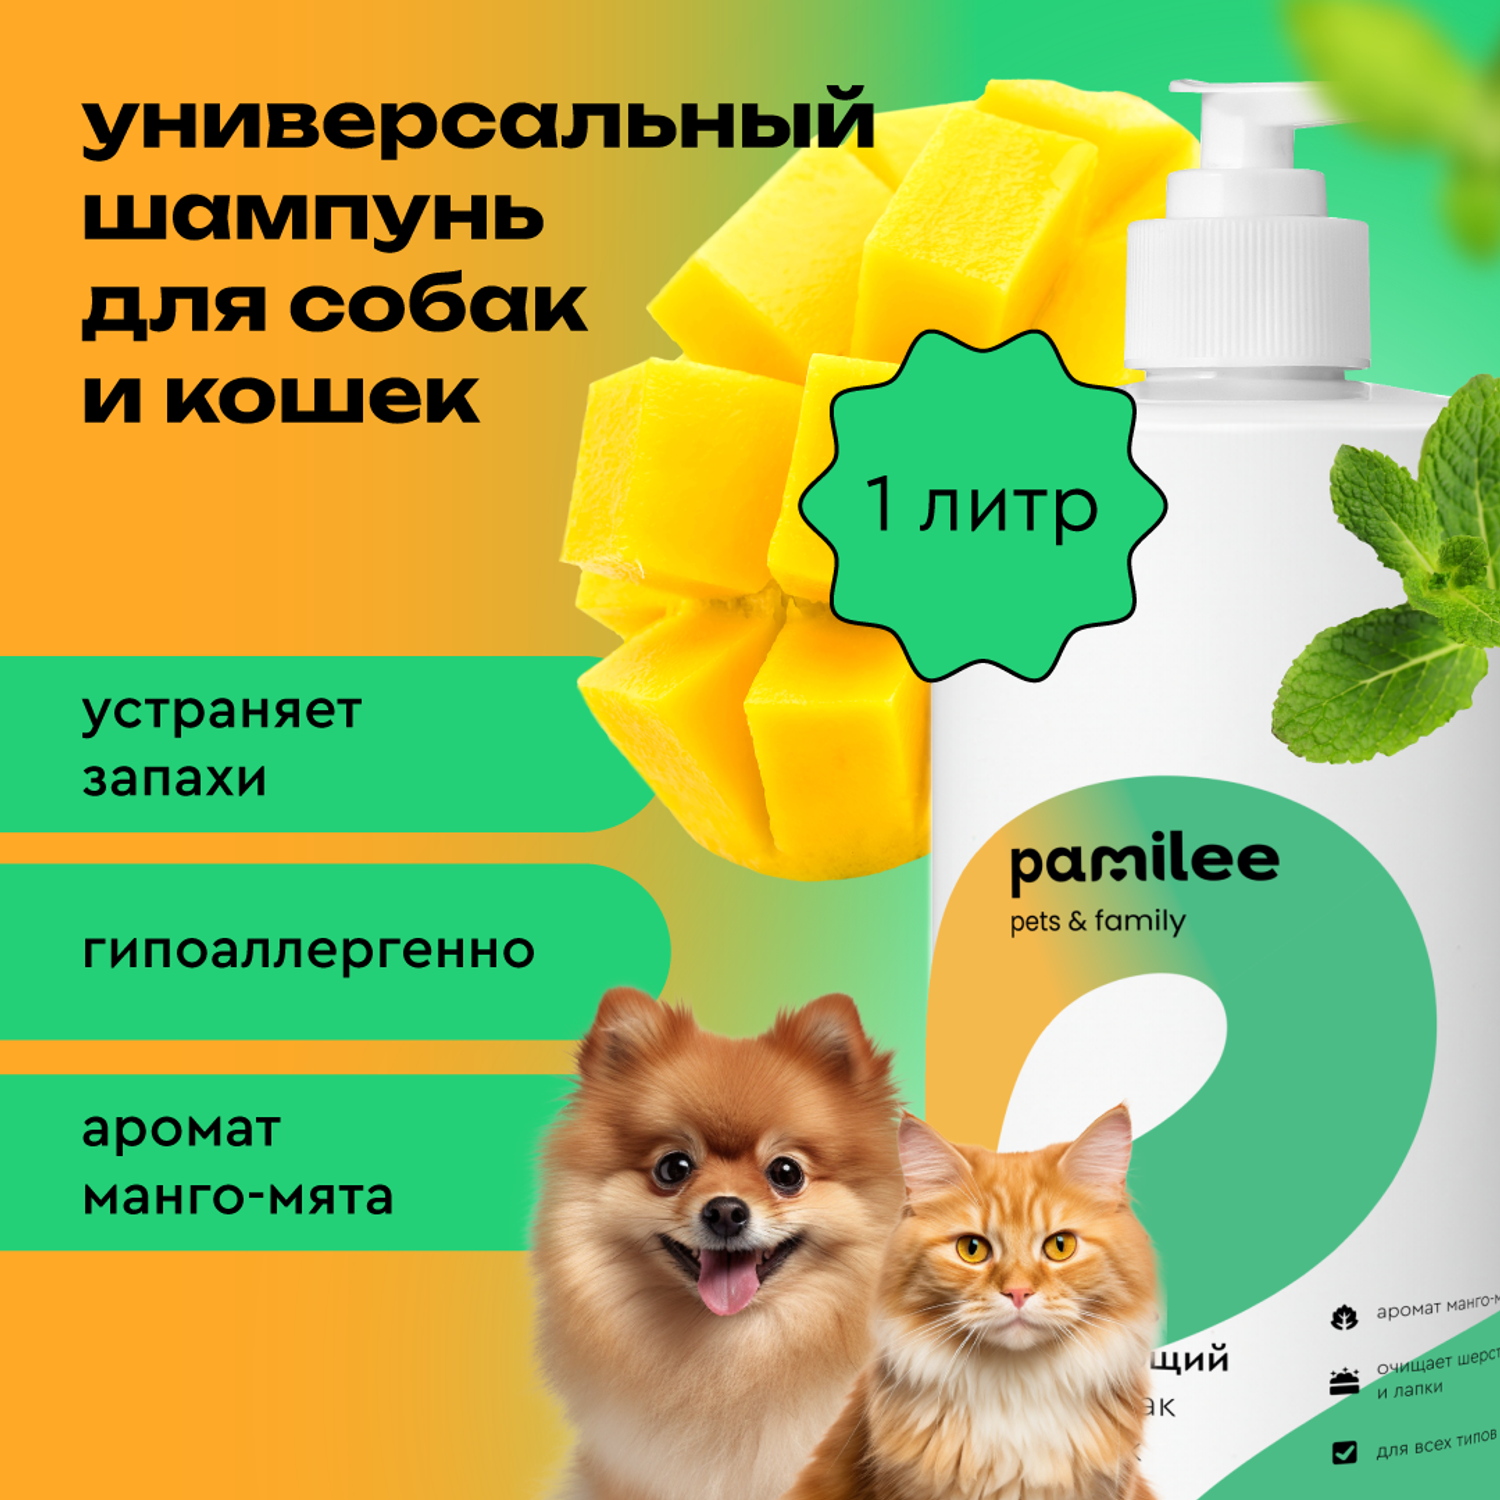 Шампунь очищающий Pamilee универсальный для кошек и собак - фото 1